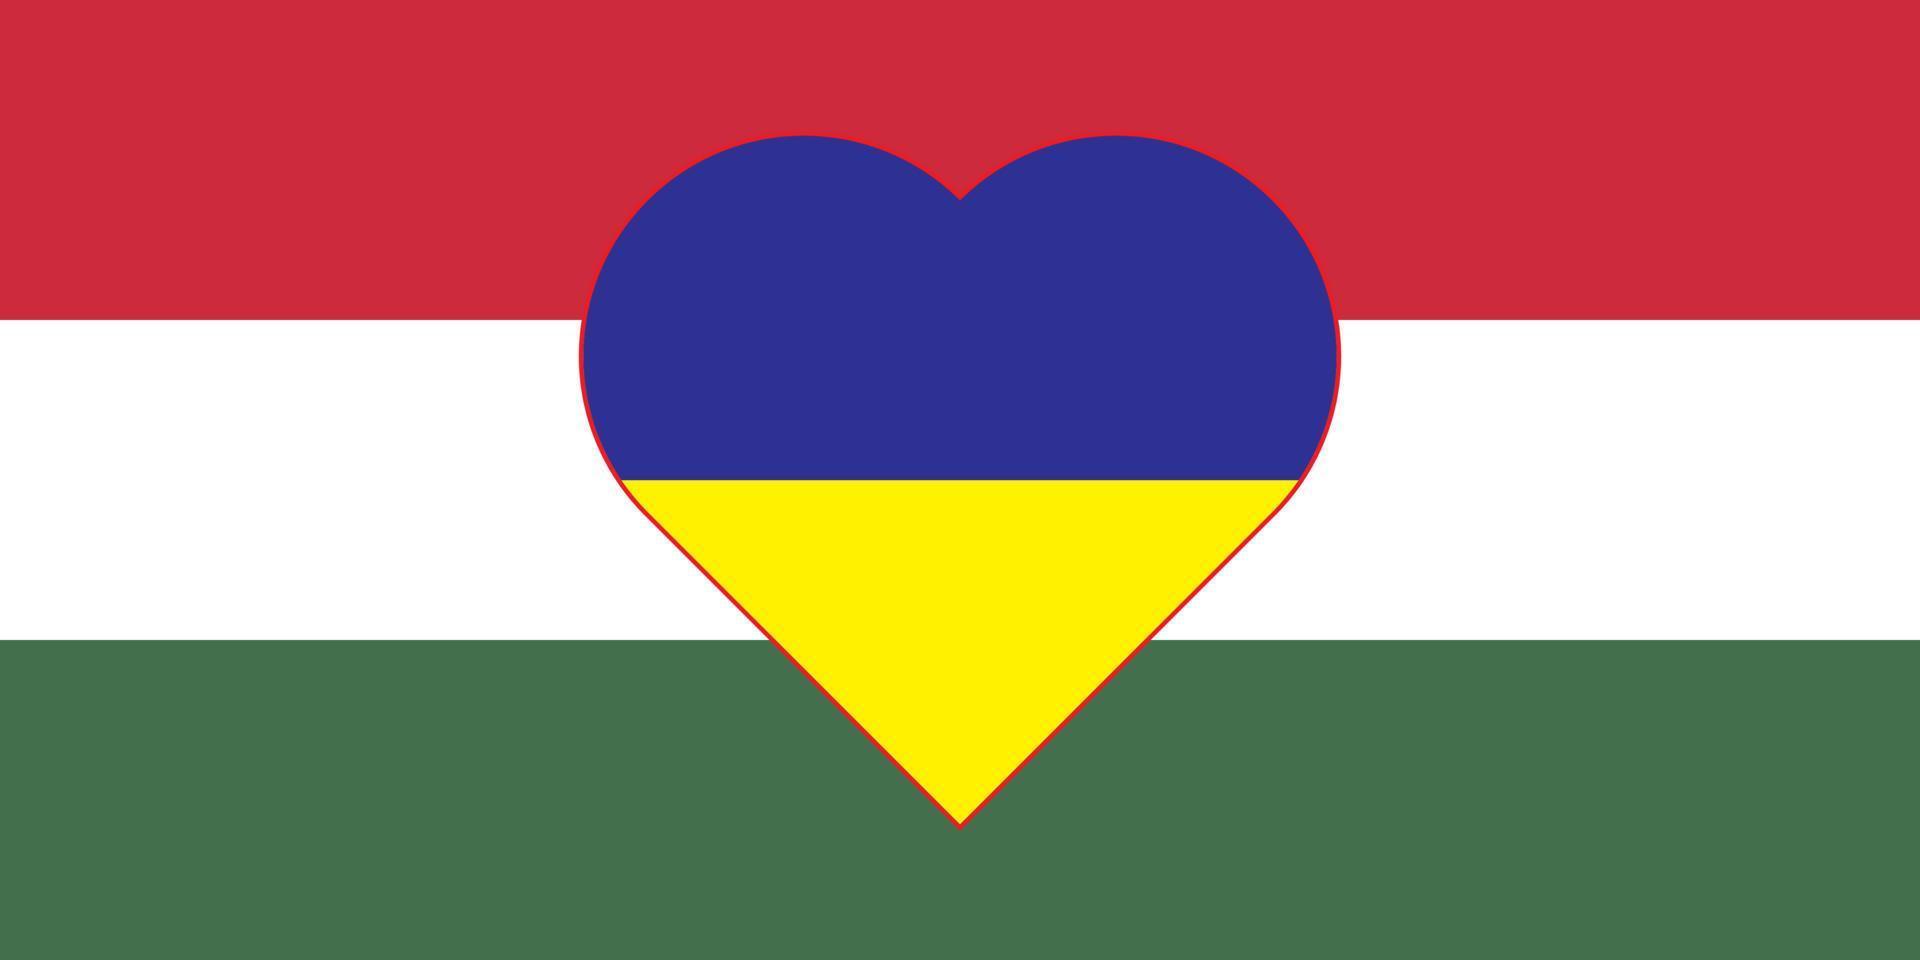 coeur peint aux couleurs du drapeau de la hongrie sur le drapeau de l'ukraine. illustration vectorielle d'un coeur avec le symbole national de la hongrie sur fond bleu-jaune. vecteur